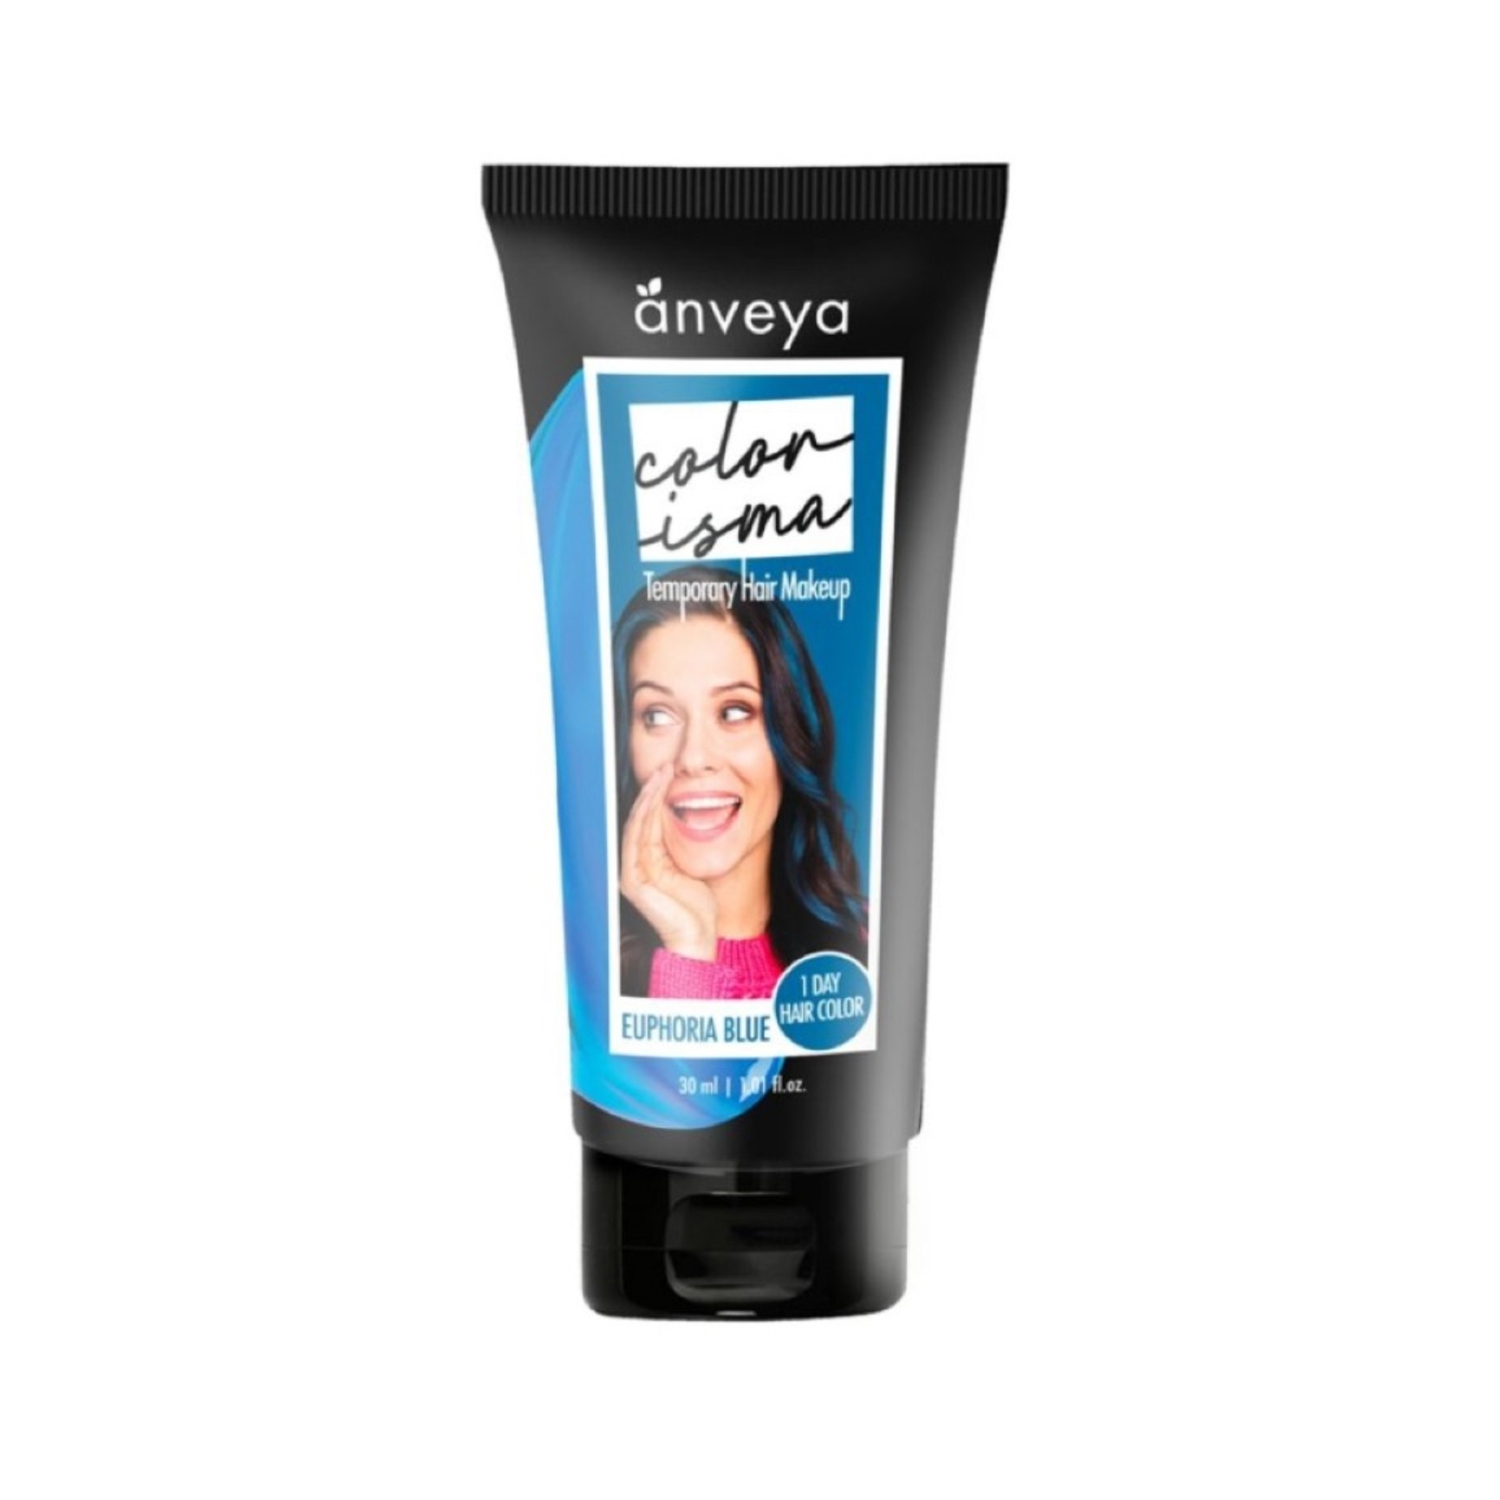 Anveya | Anveya Colorisma Hair Color Makeup - Euphoria Blue (30ml)